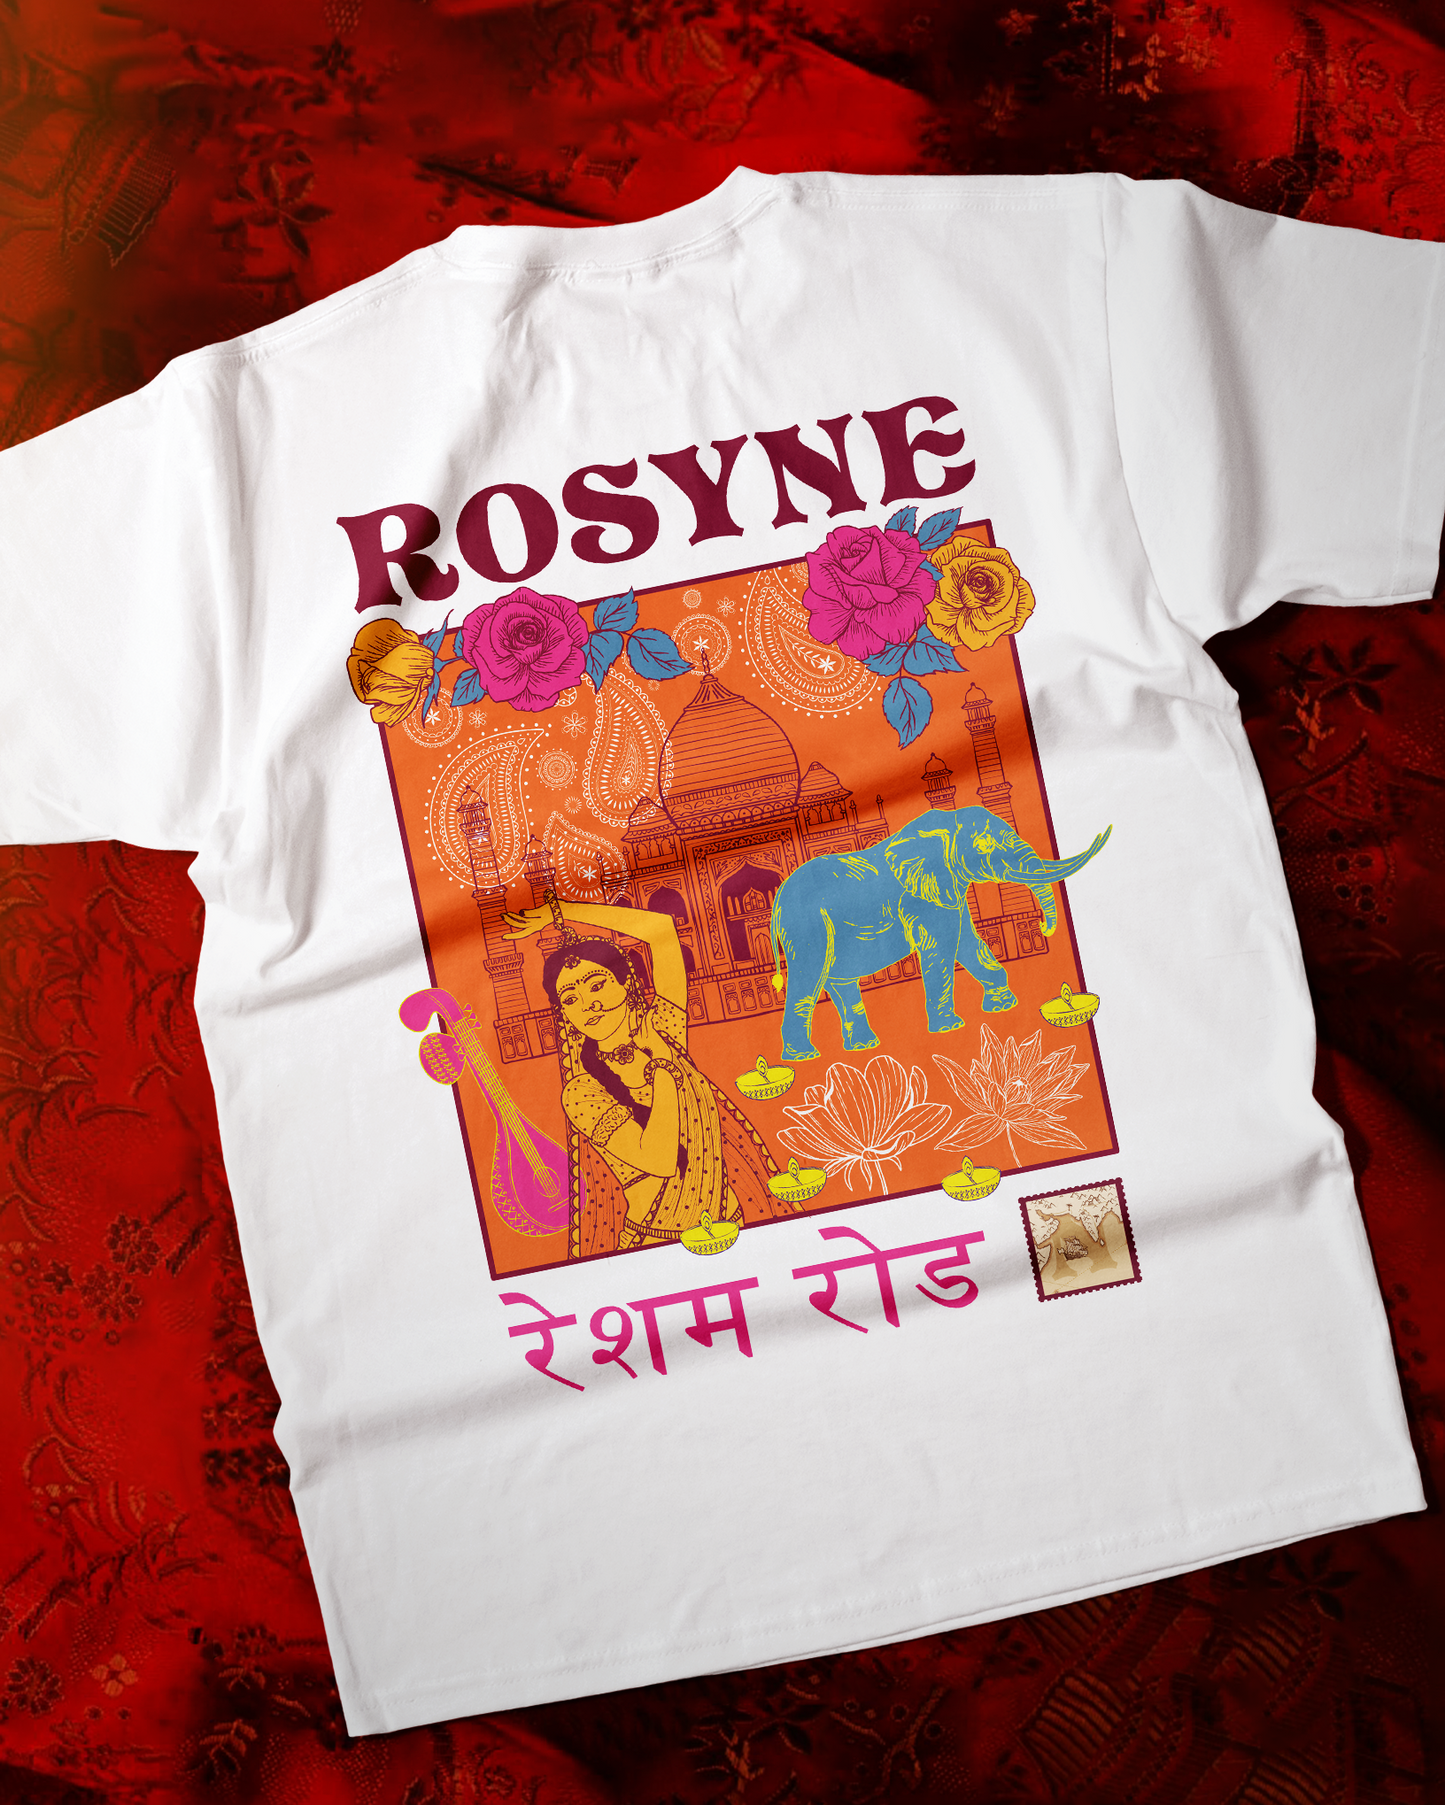 T-shirt India White - Oversize - Rosyne Club